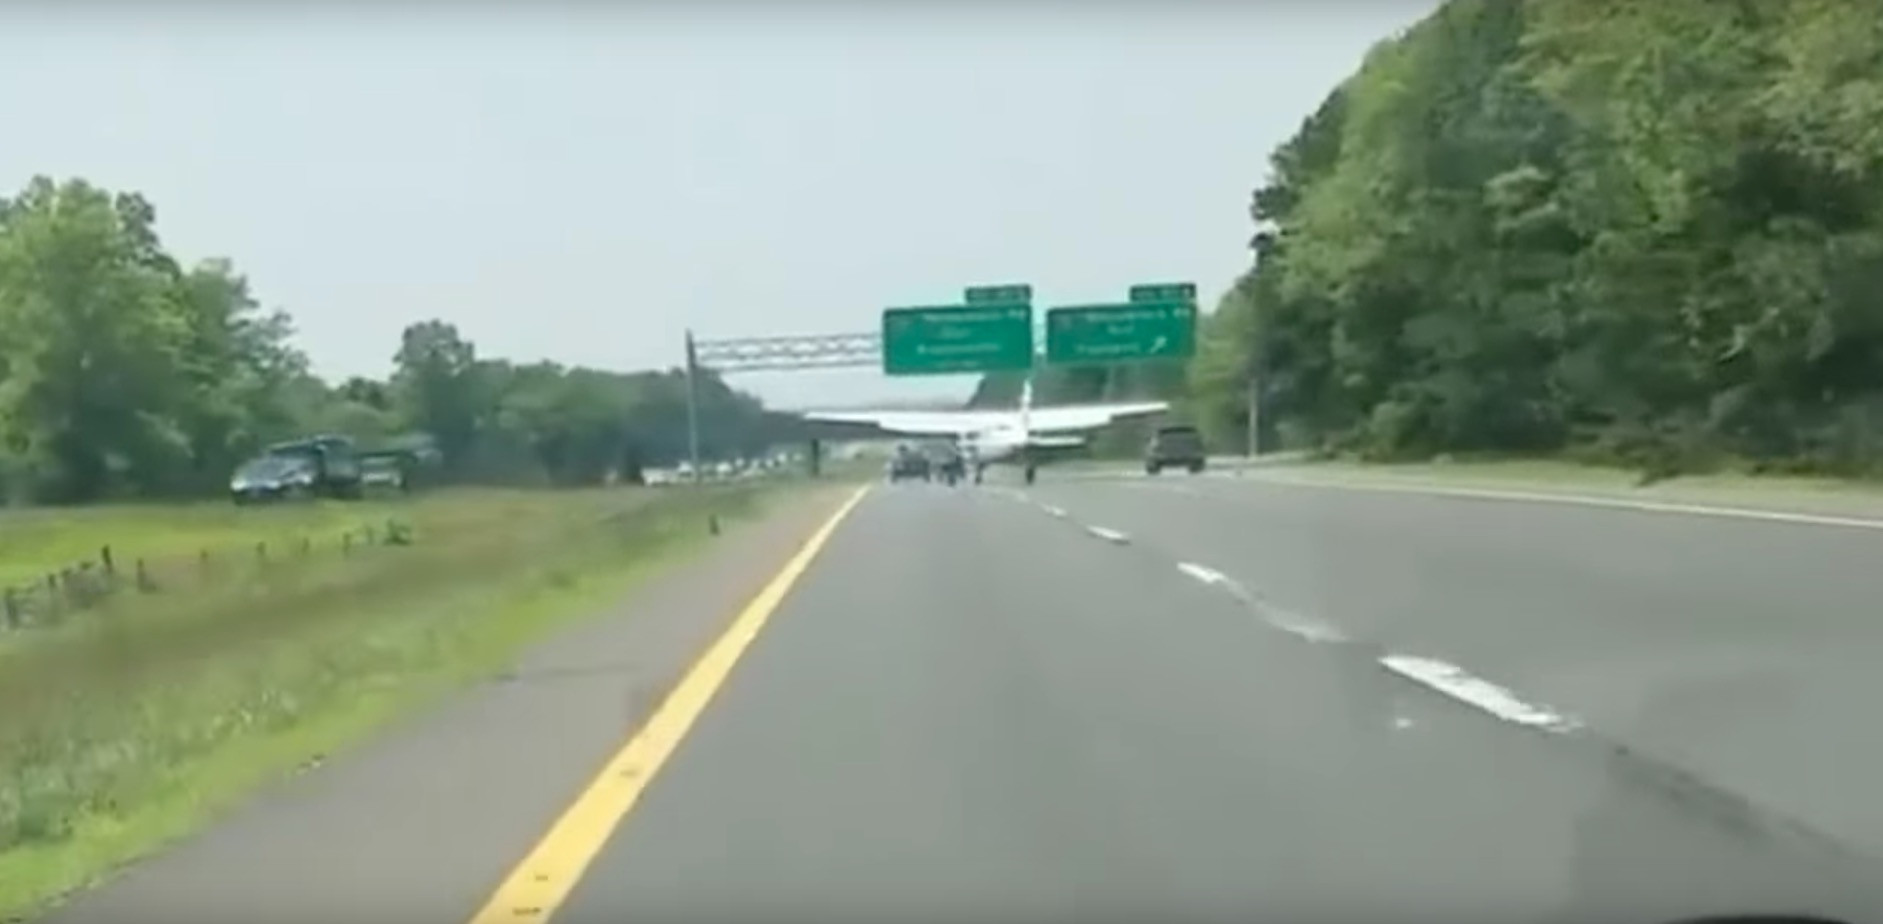 ΗΠΑ: Αεροπλάνο προσγειώθηκε σε αυτοκινητόδρομο [Βίντεο]